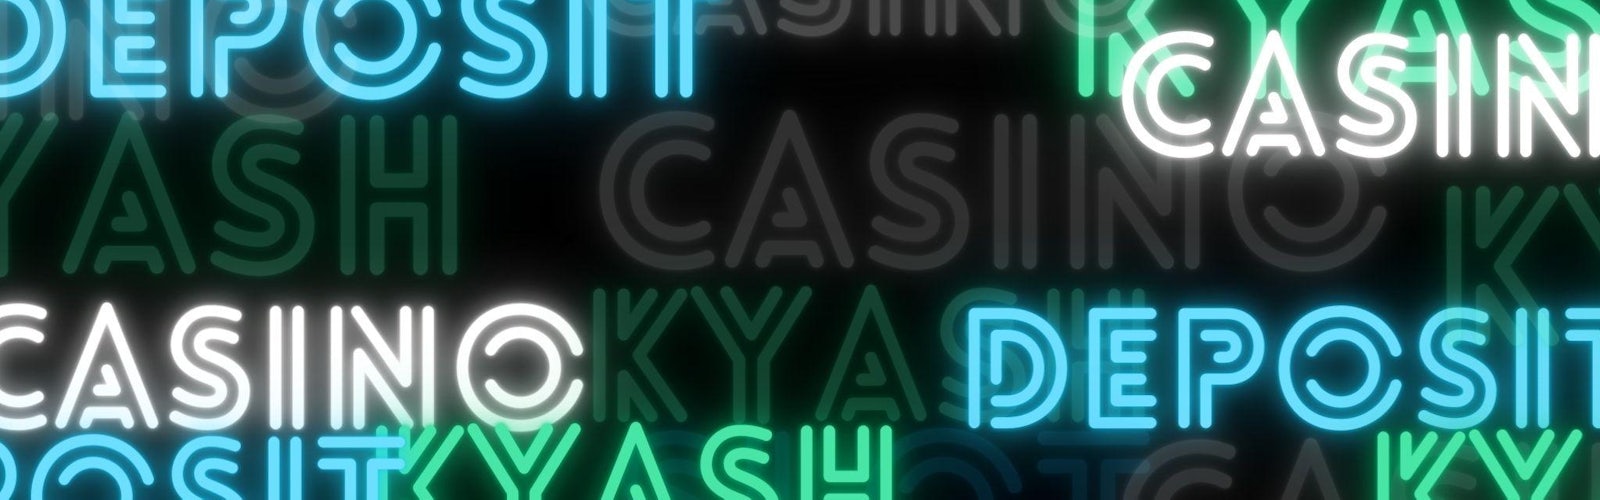 Kyash main background